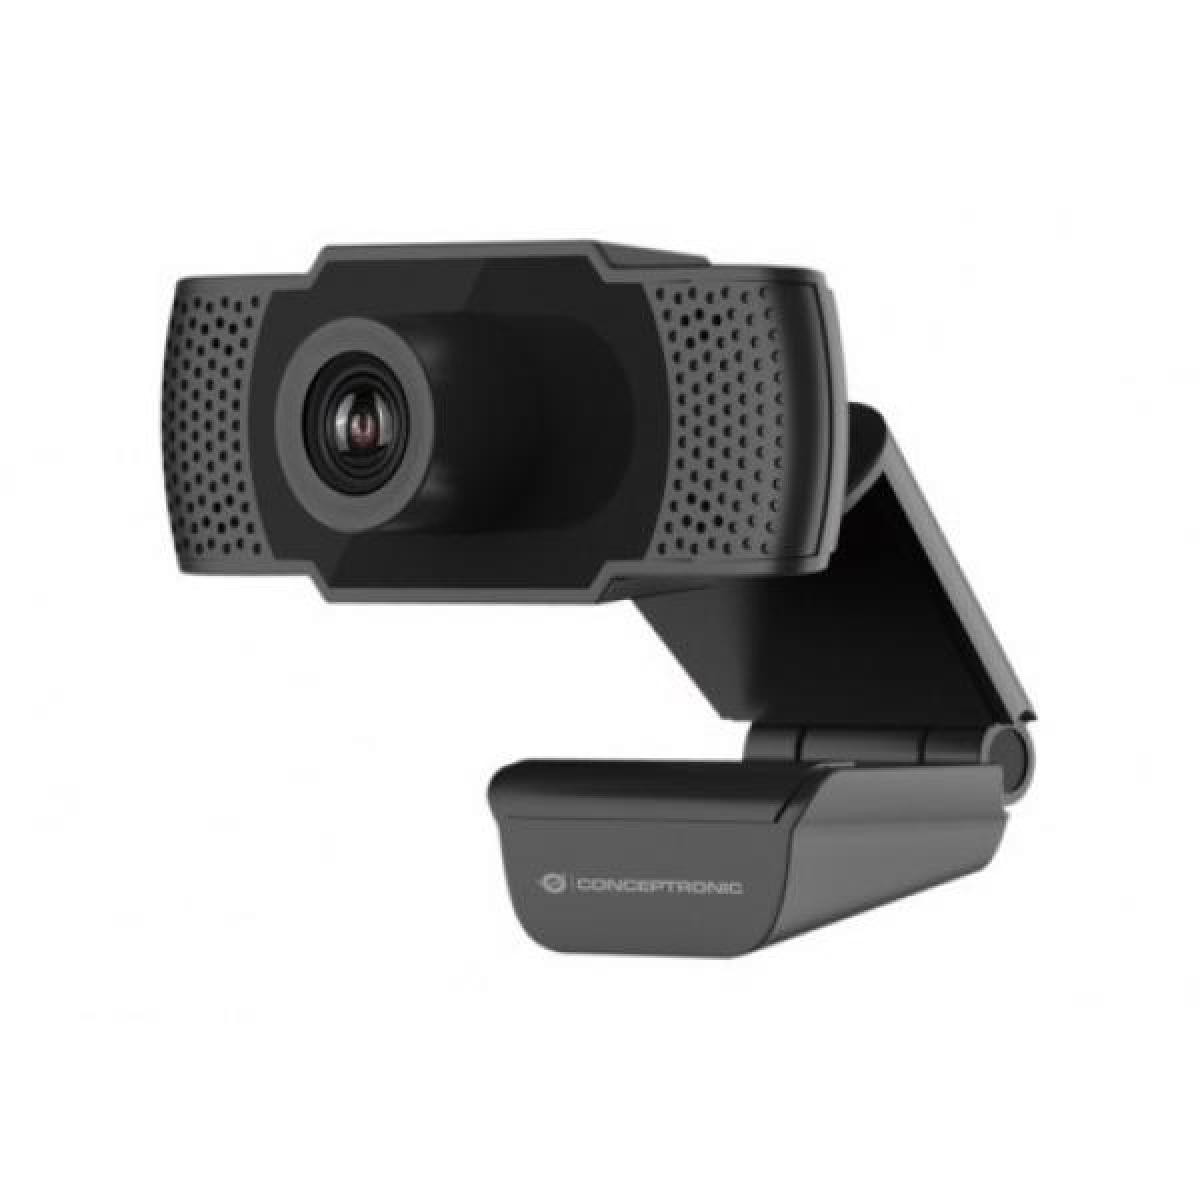 Conceptronic - Webcam Fhd Conceptronic Usb 1080p - Bracelet connecté